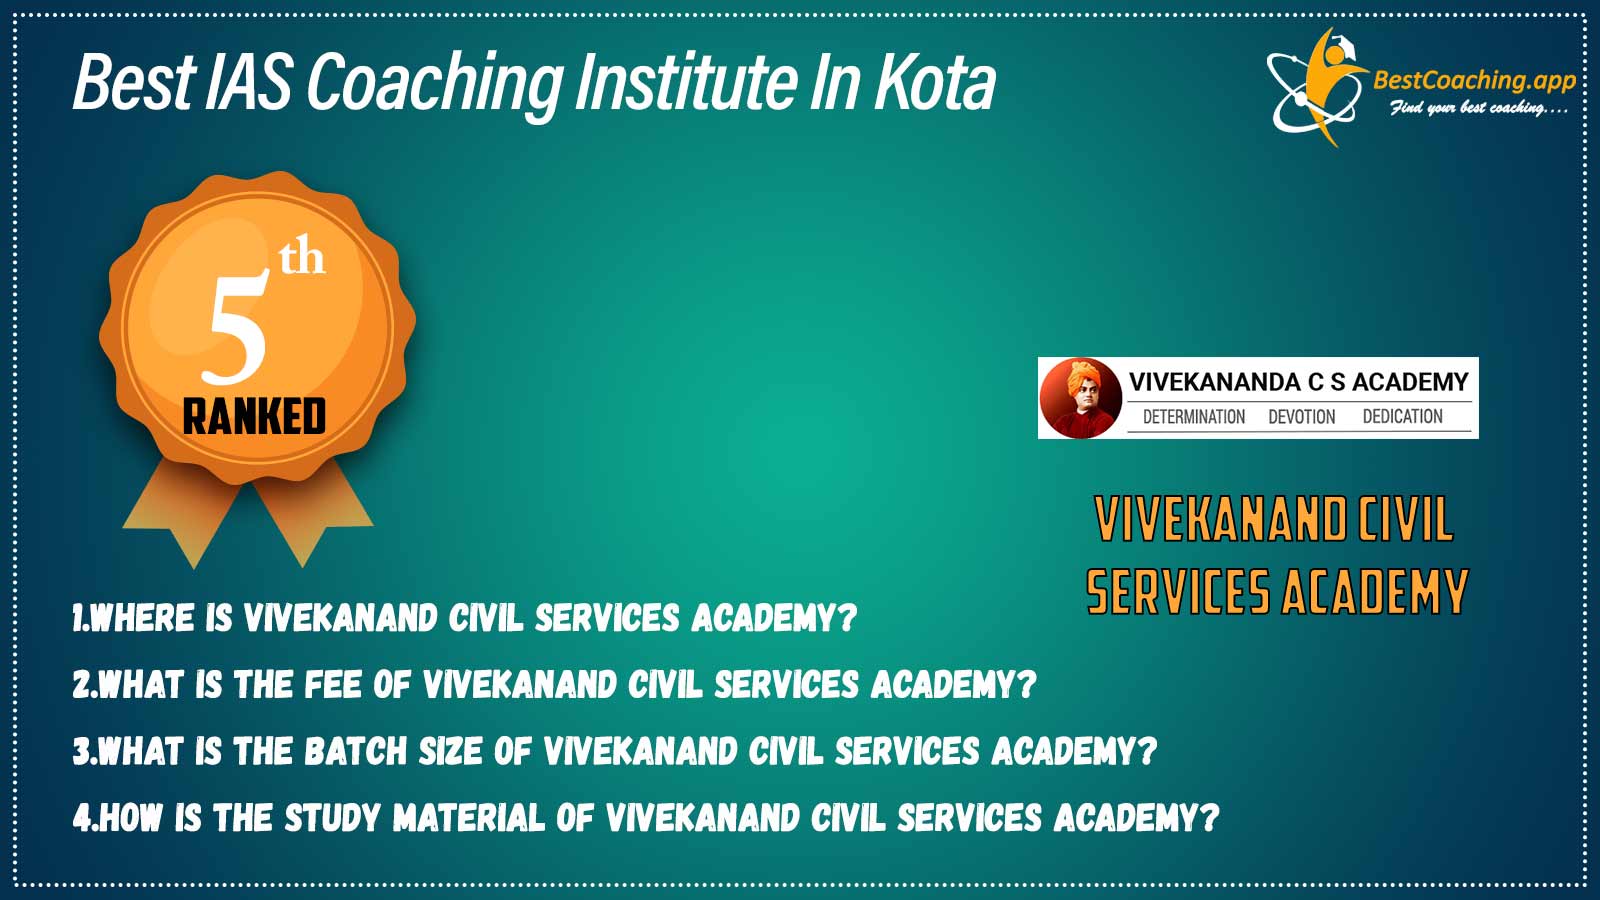 Best IAS Coaching Institute in Kota